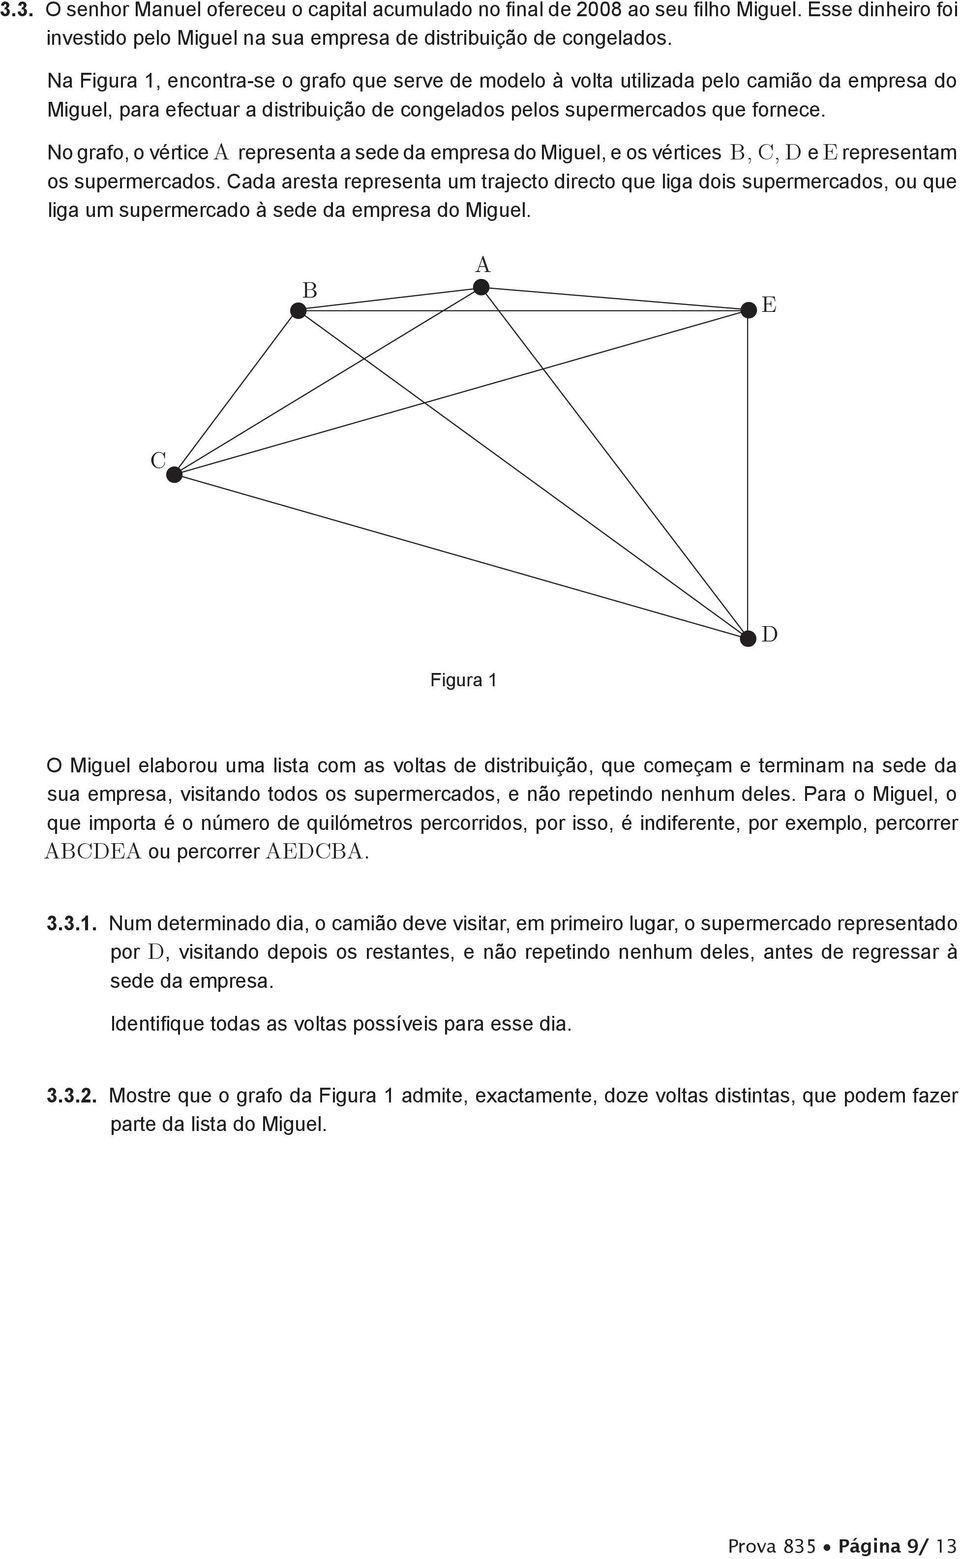 No grafo, o vértice A representa a sede da empresa do Miguel, e os vértices B, C, D e E representam os supermercados.